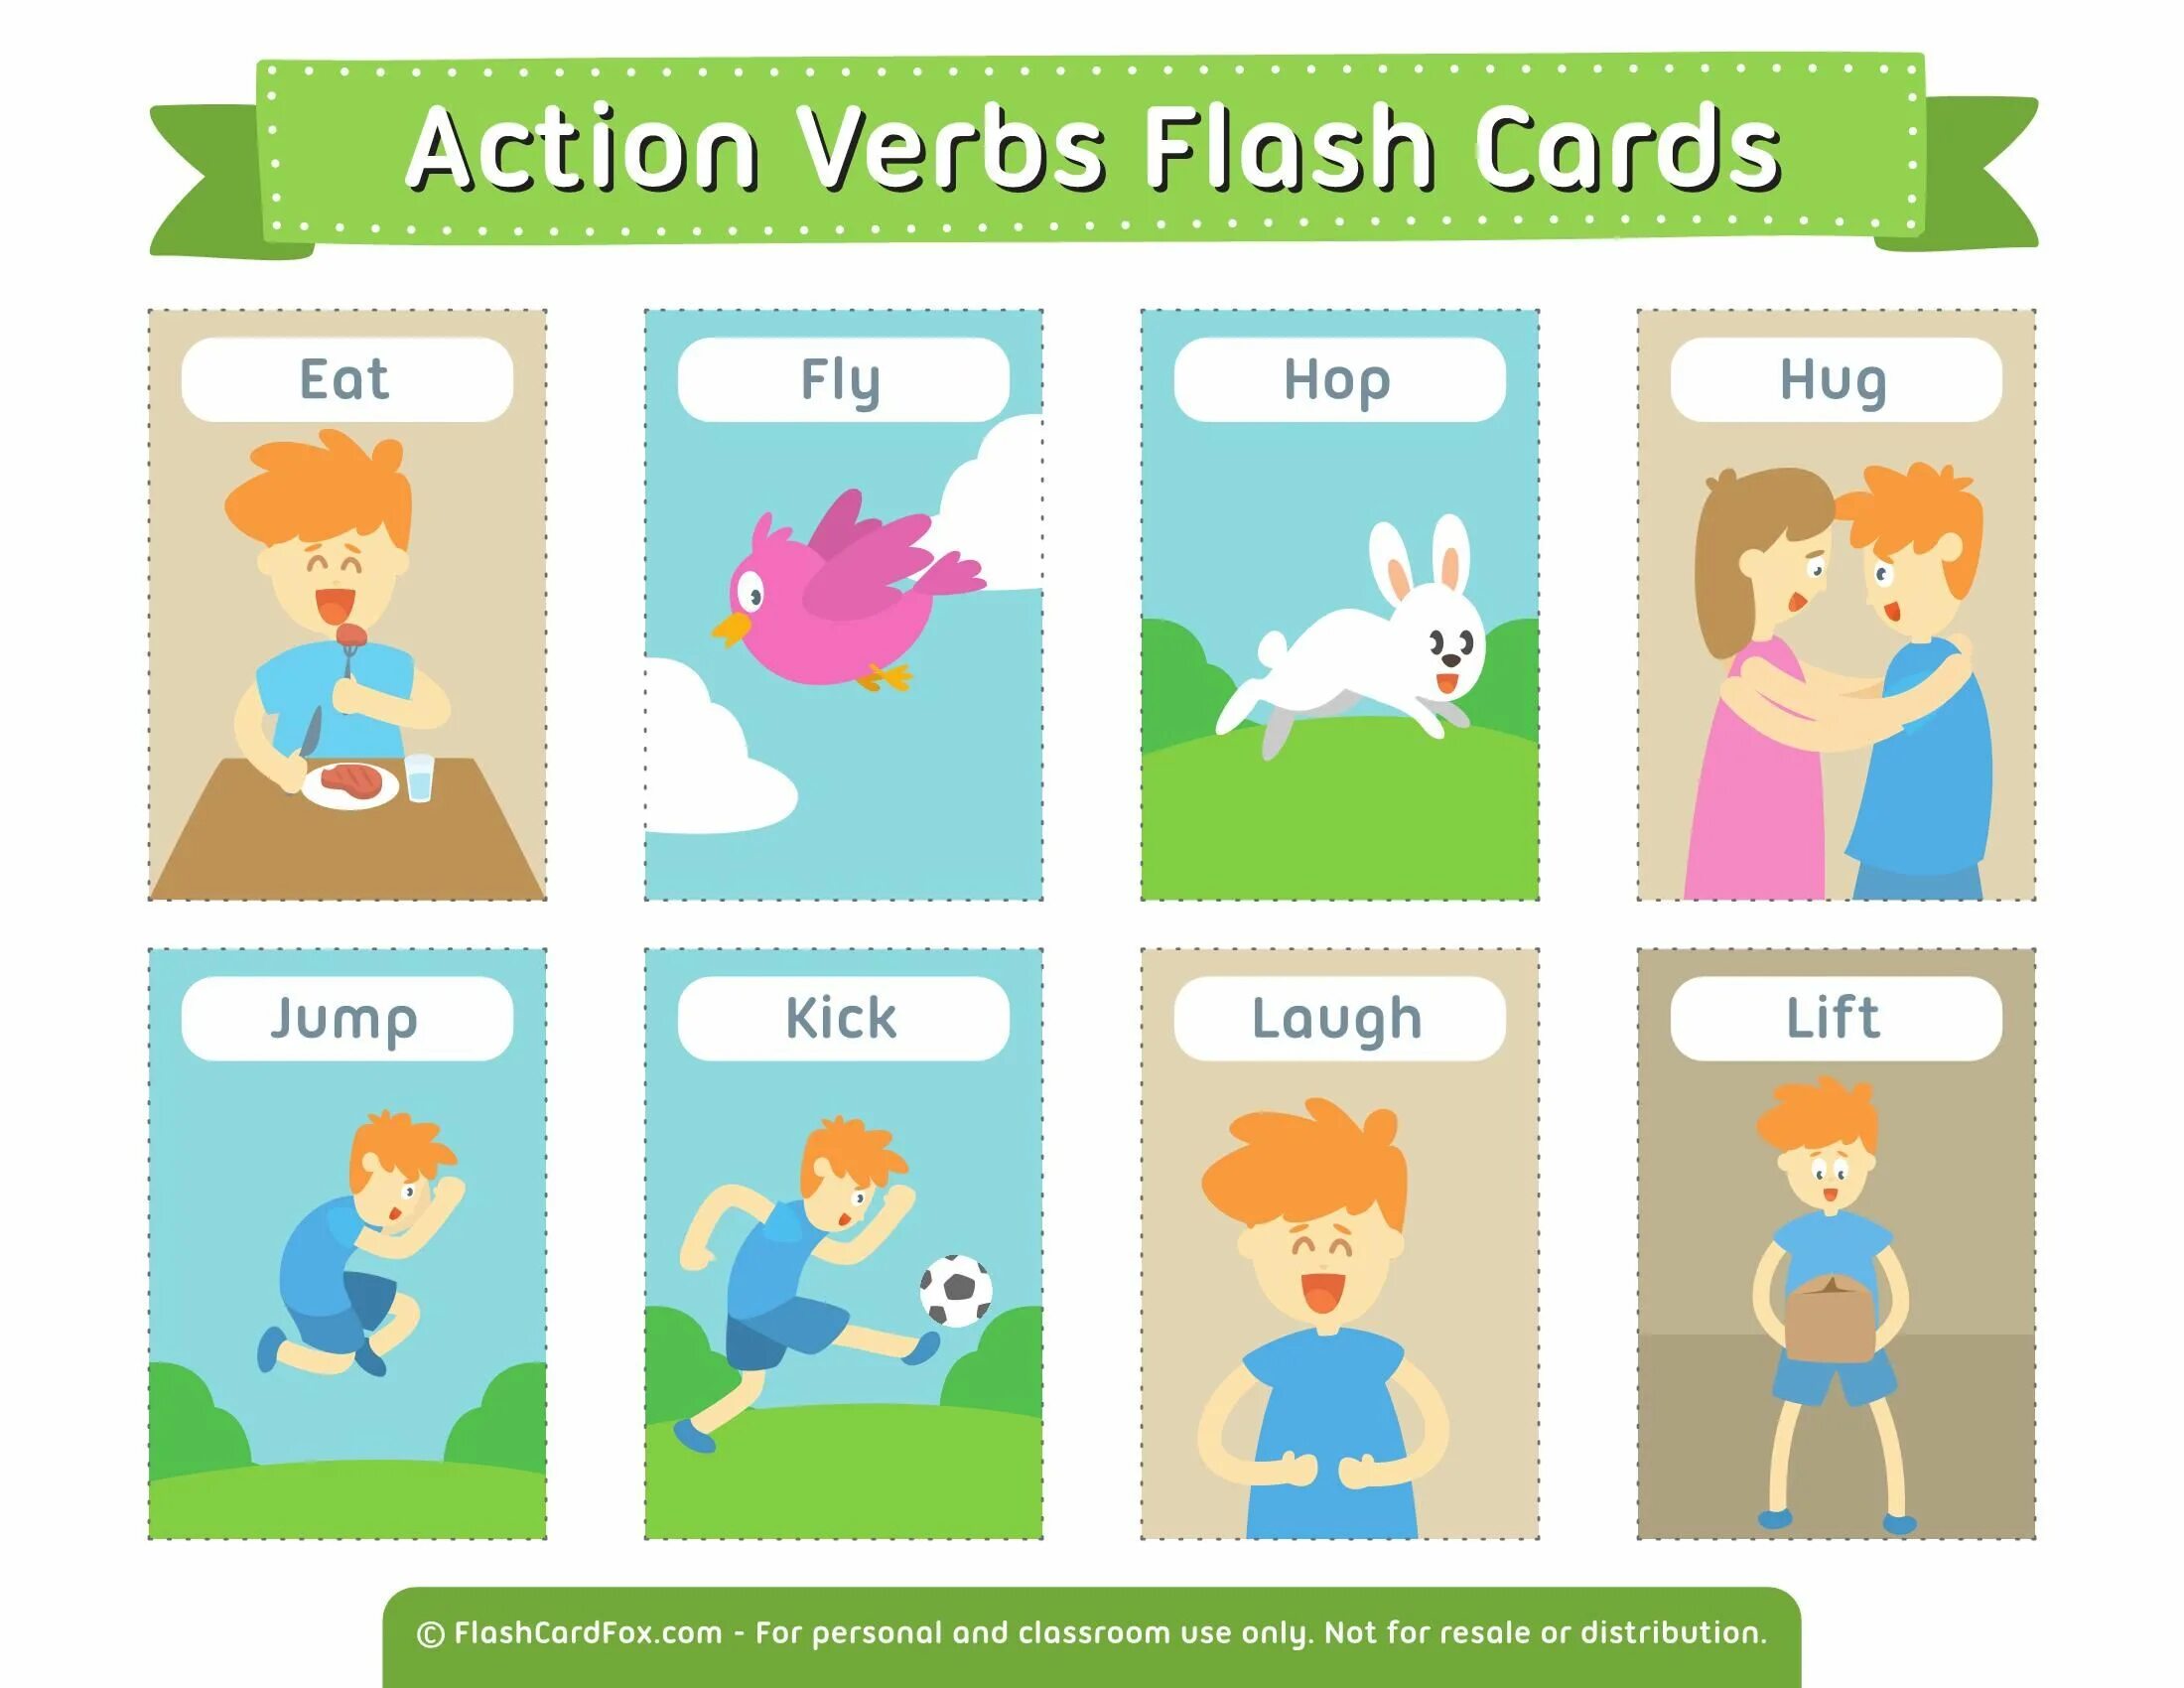 Action verbs карточки английского для детей. Карточки Actions. Карточки Actions для детей. Карточки действия для детей глаголы. Картинки действий на английском